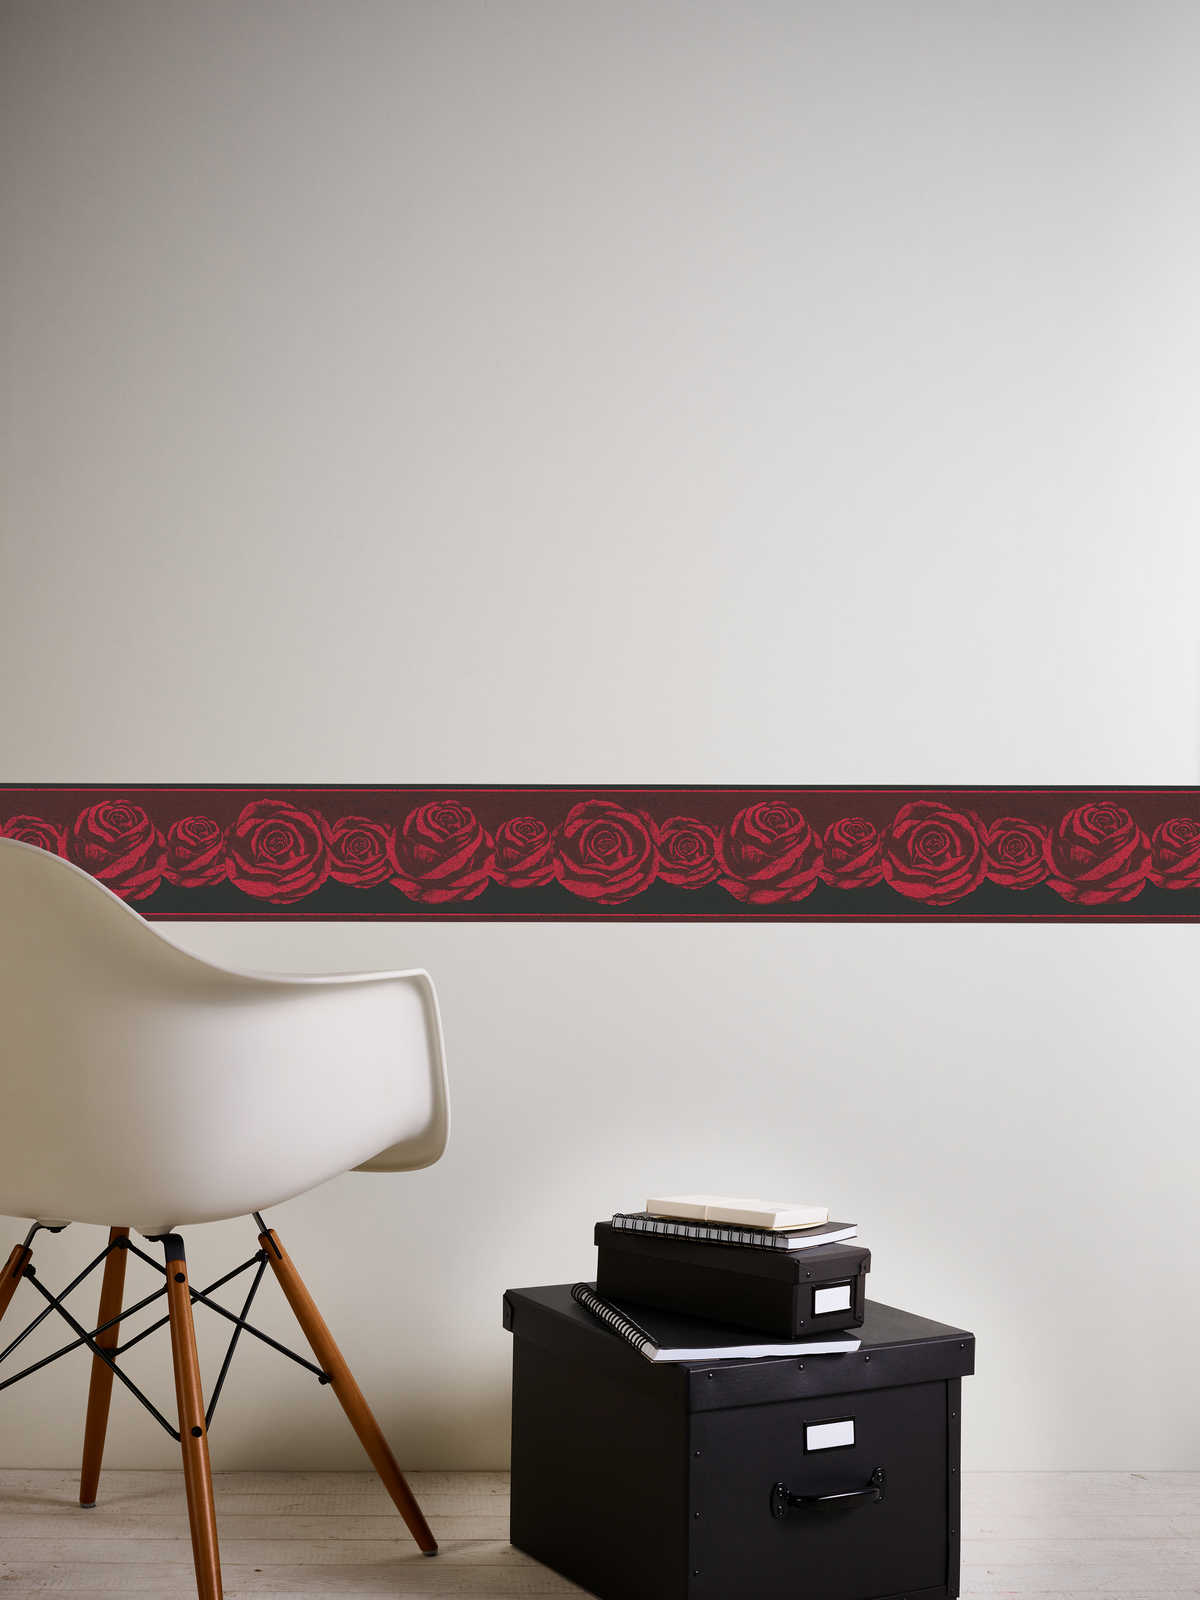             Bordure de papier peint noir-rouge avec motif de roses
        